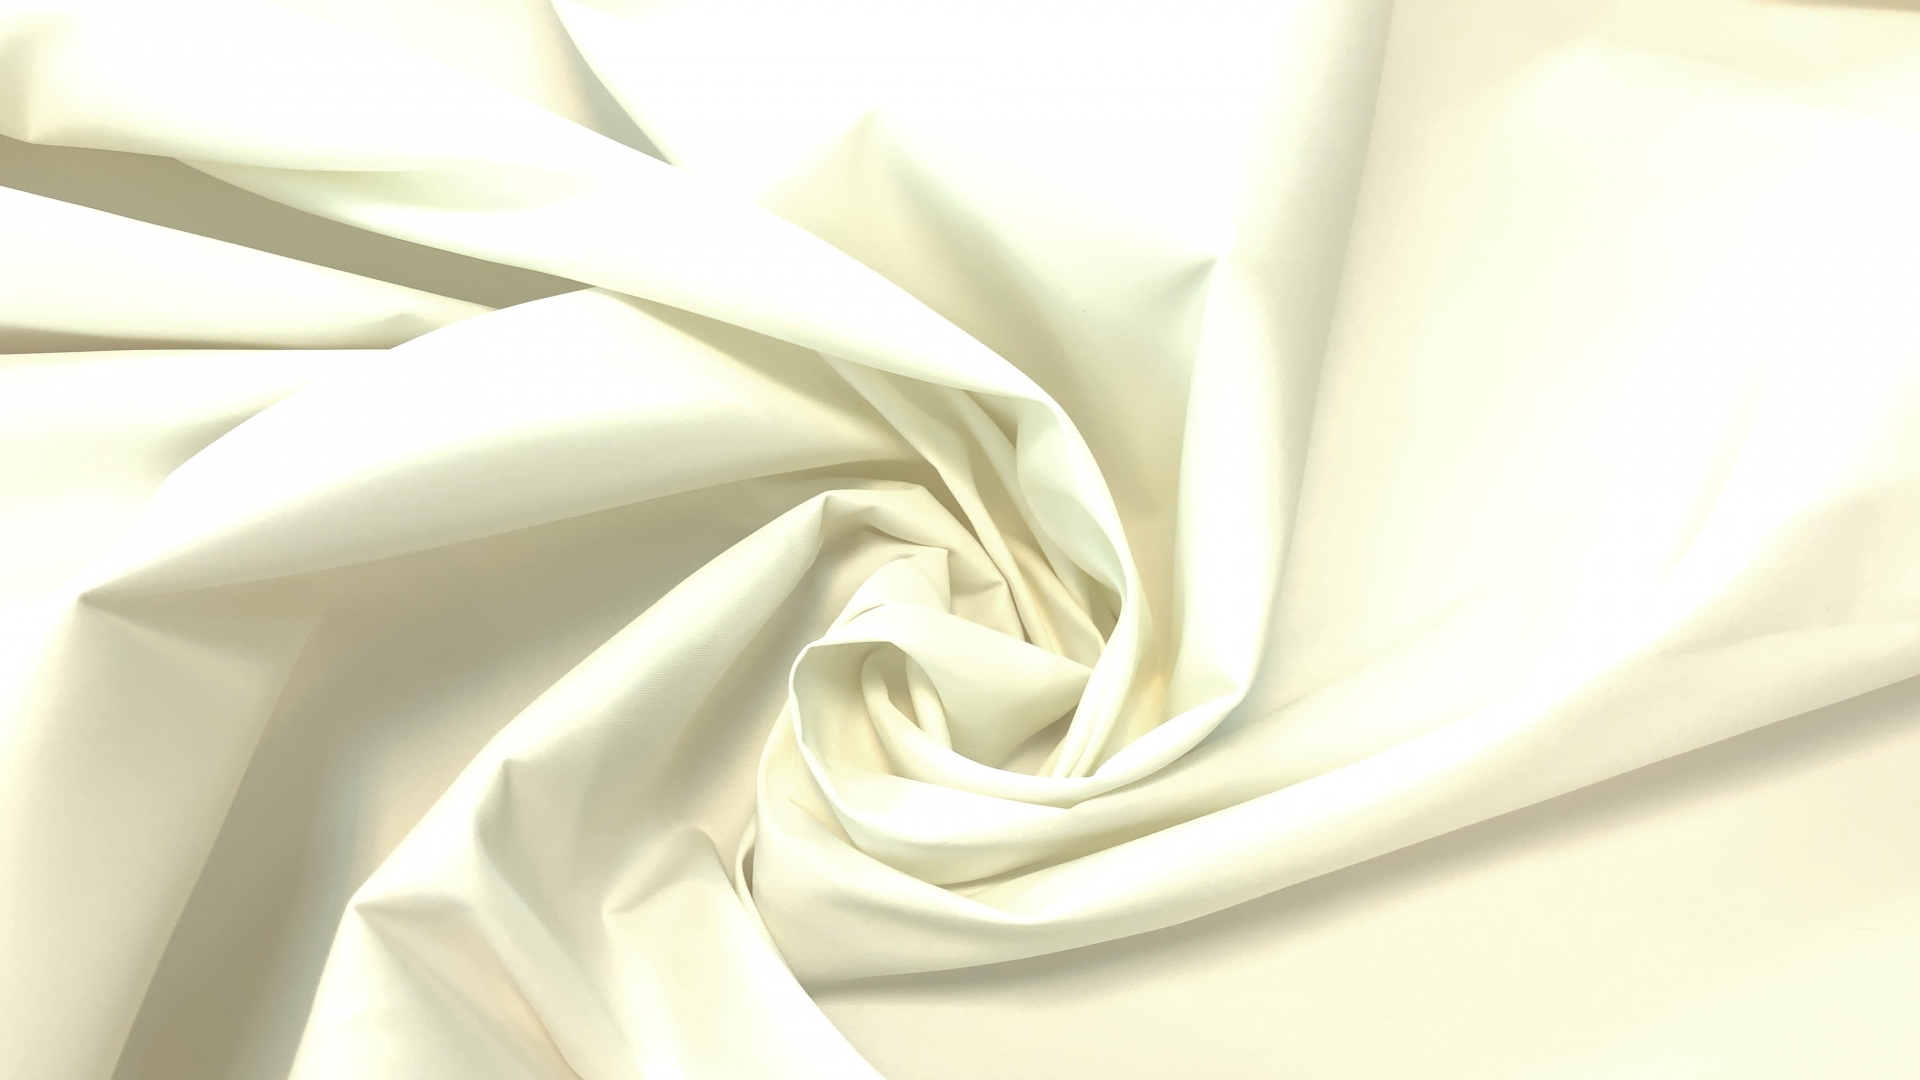 Сток итальянской фабрики! Плотная белая плащевка. Великолепно держит форму, подходит для пошива изделий с пышными фрагментами.